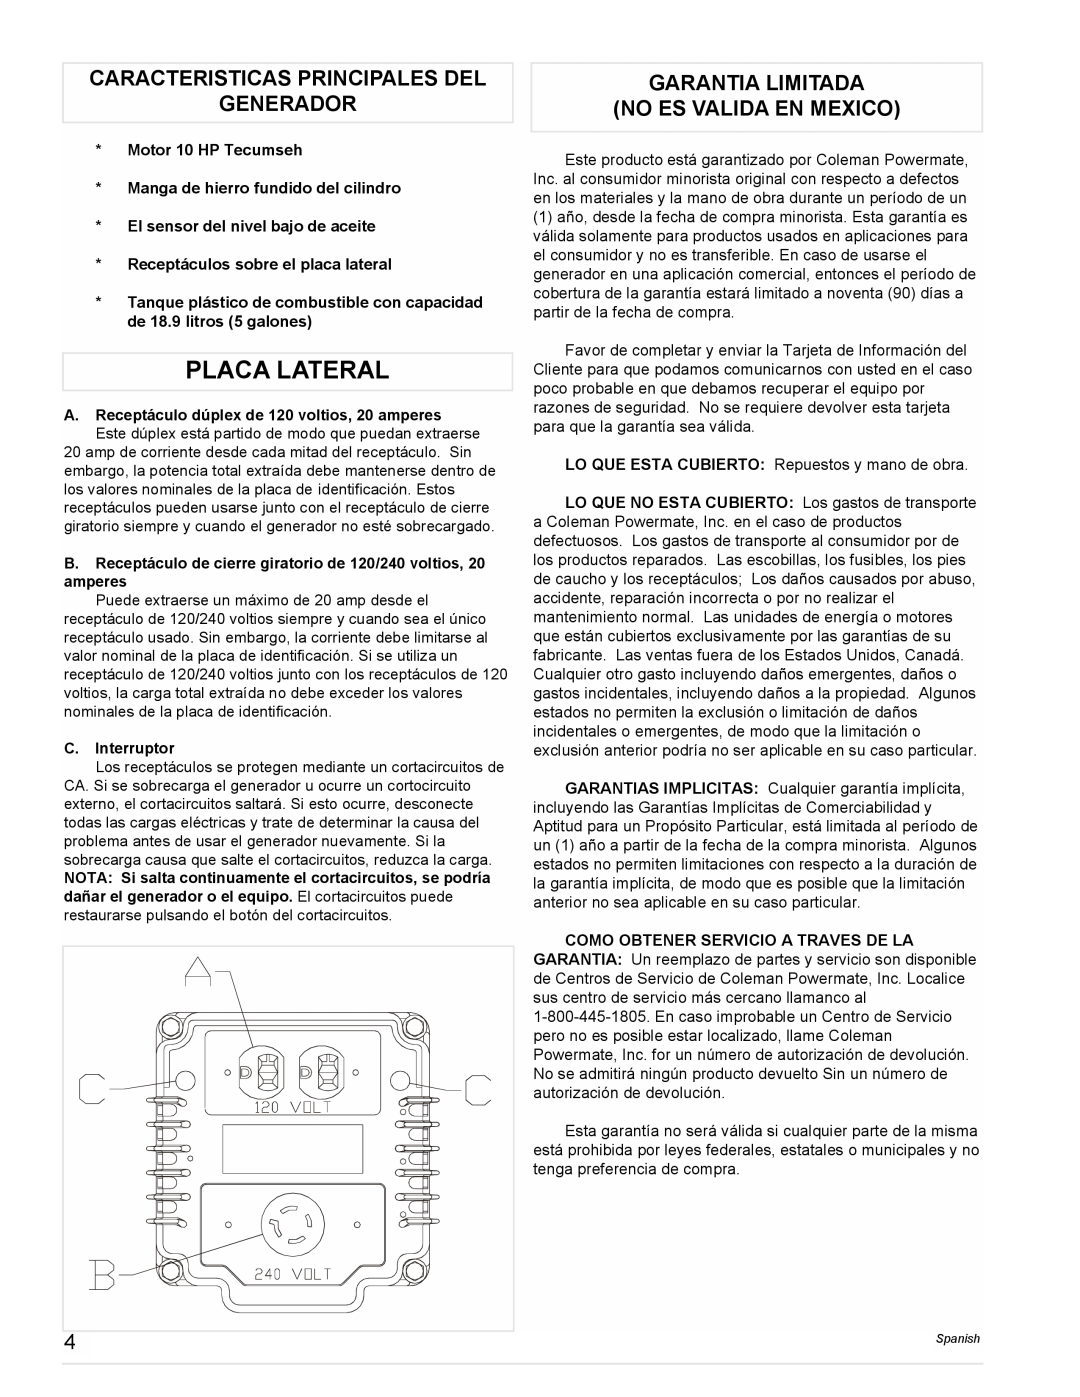 Powermate PM0525202.03 Placa Lateral, Caracteristicas Principales Del Generador, Garantia Limitada No Es Valida En Mexico 